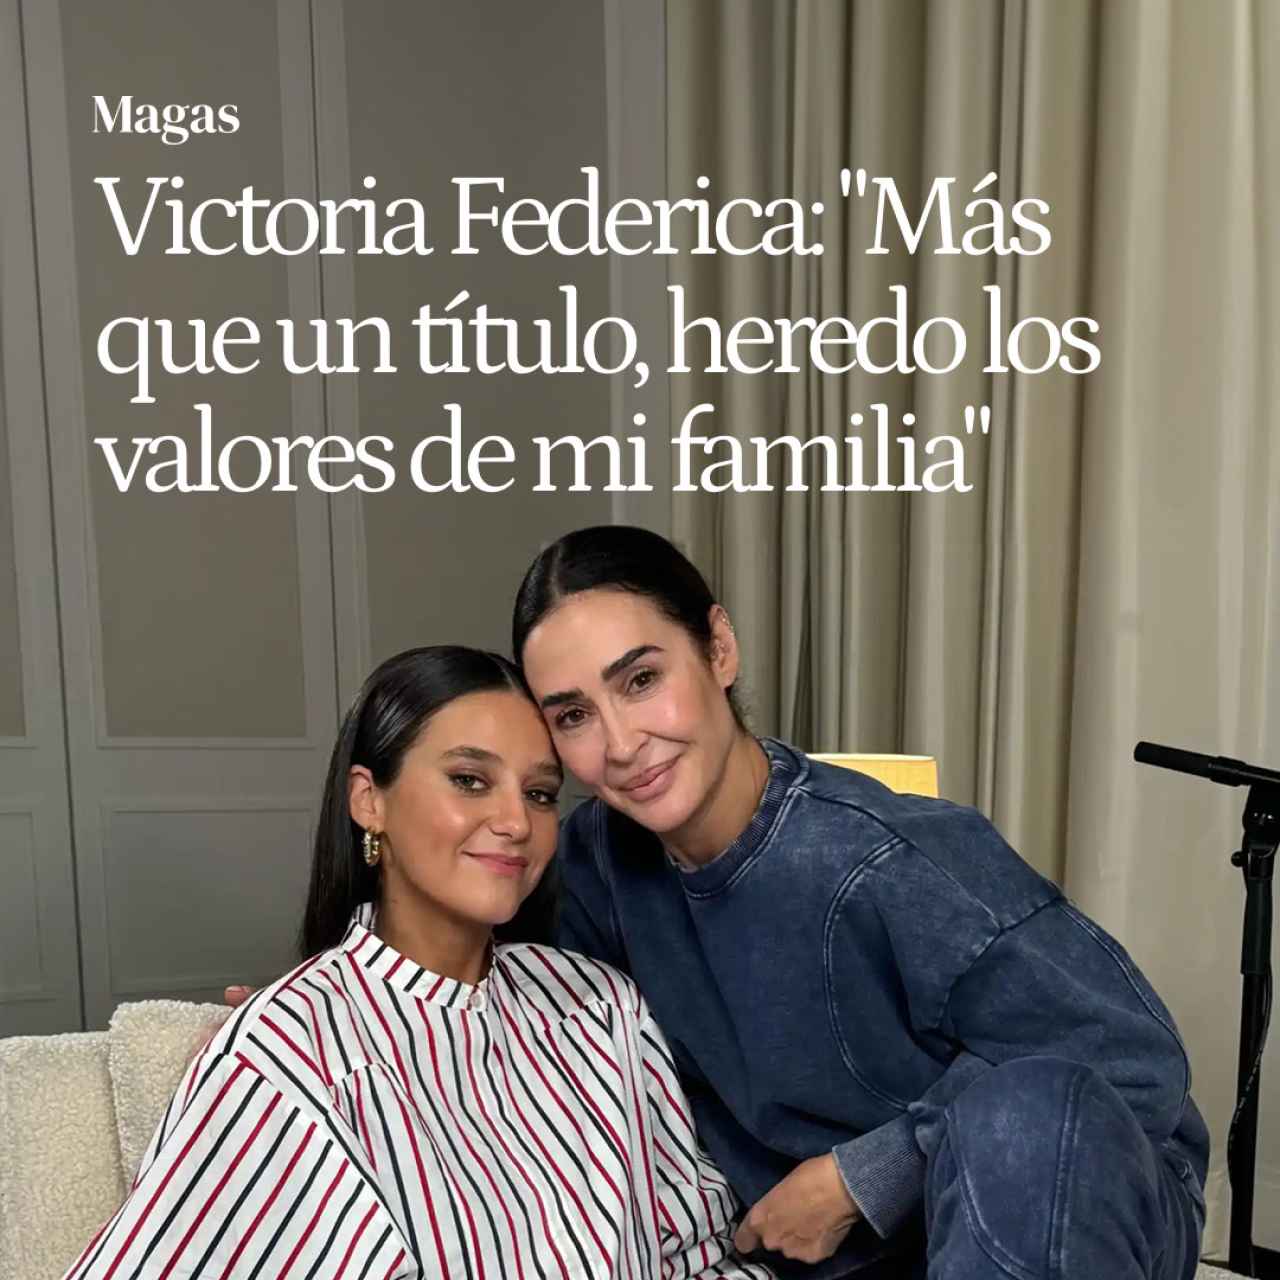 Victoria Federica: "Más que un título, de mis abuelos, mis tíos y mis padres he heredado los valores"